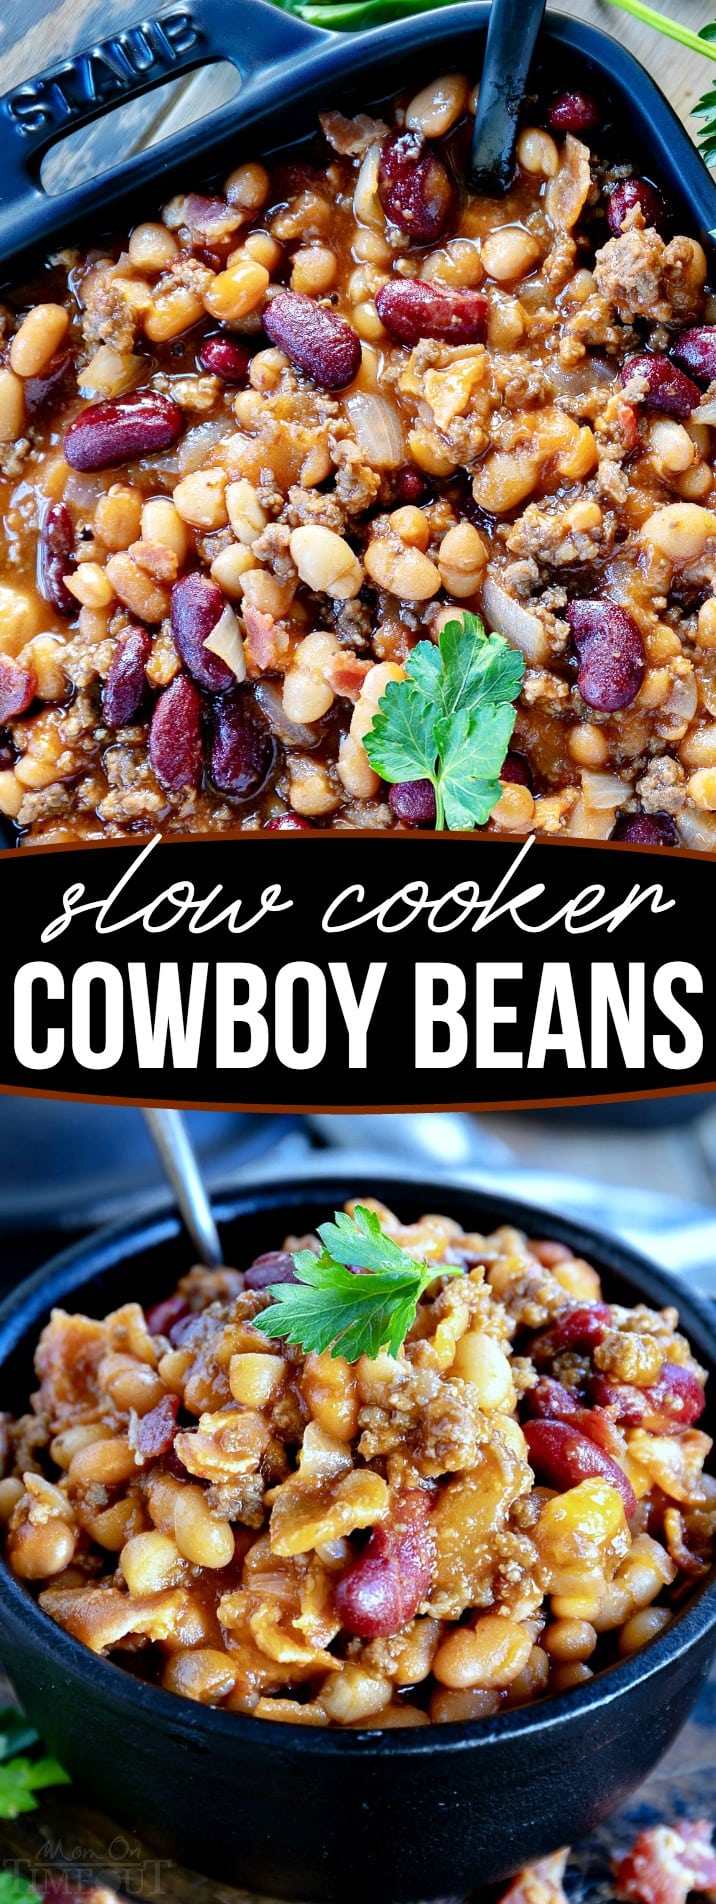 cowboy-beans-crock-pot-collage